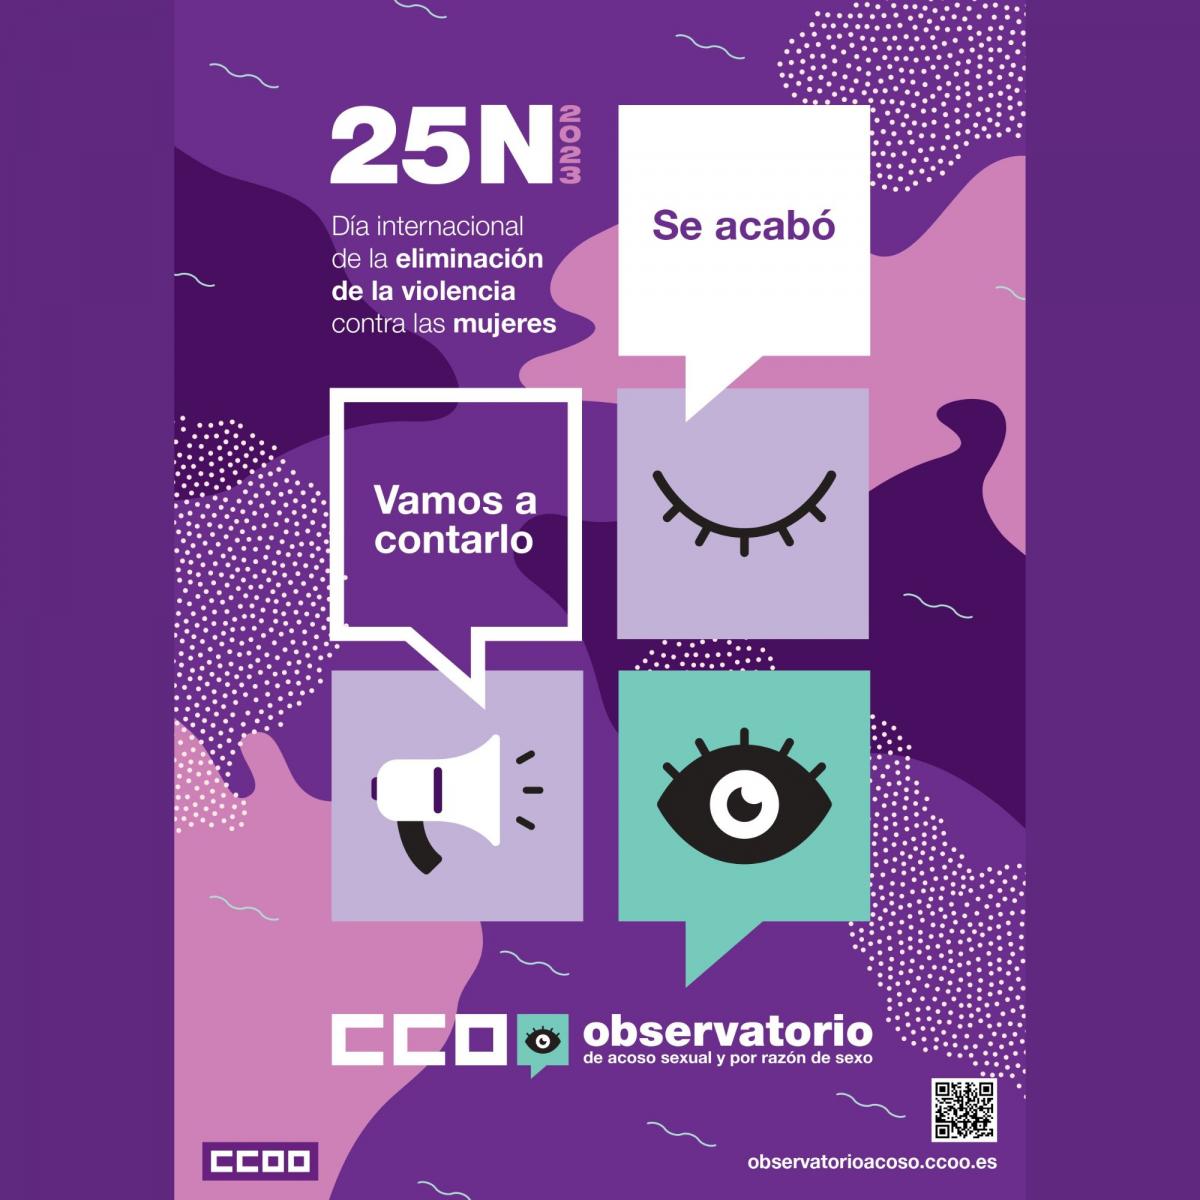 25N - Da internacional de la eliminacin de la violencia contra la mujer